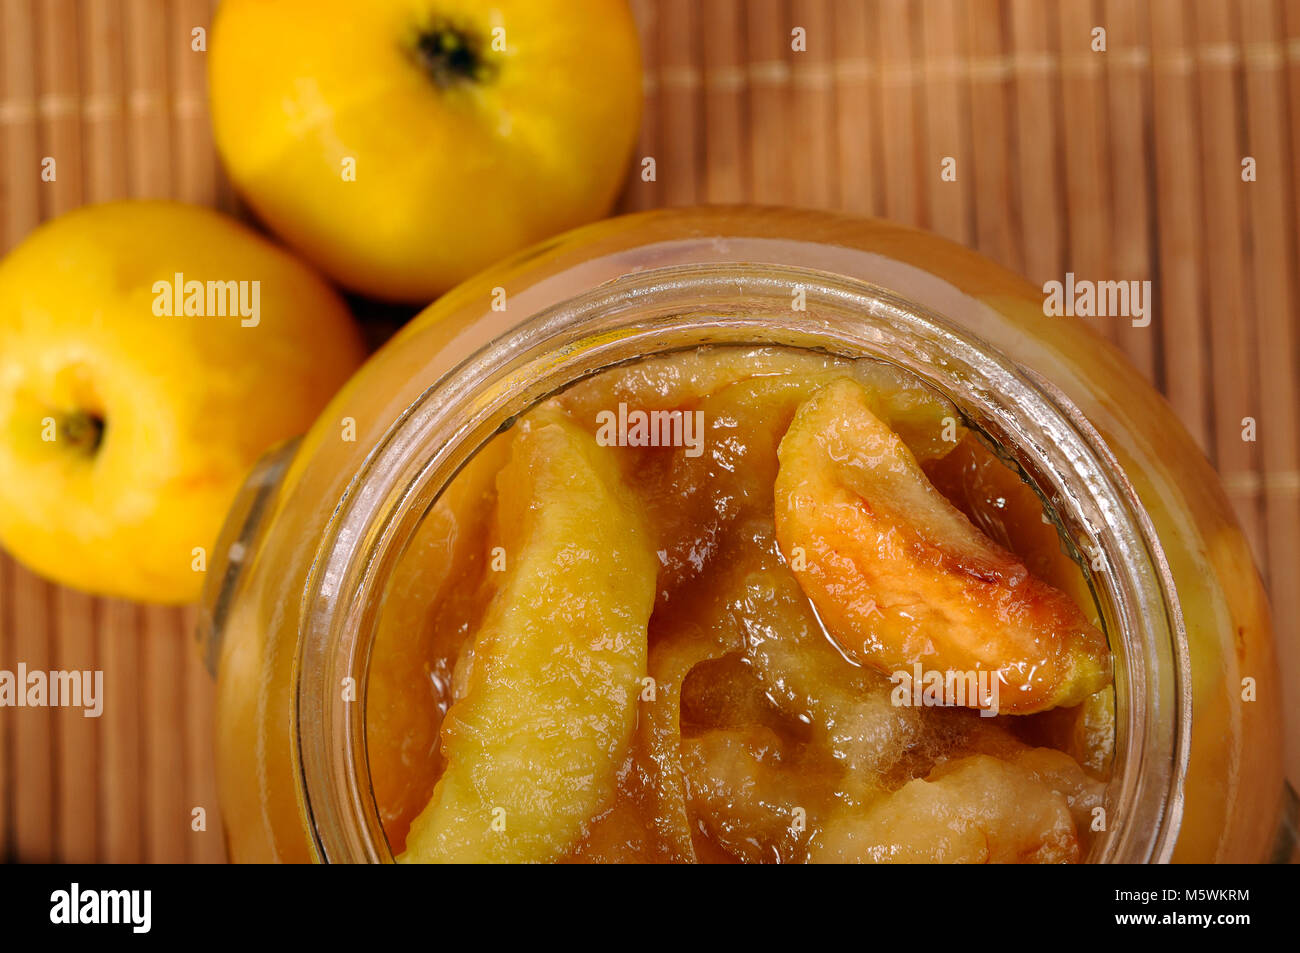 Jar of apple jam closeup Stock Photo